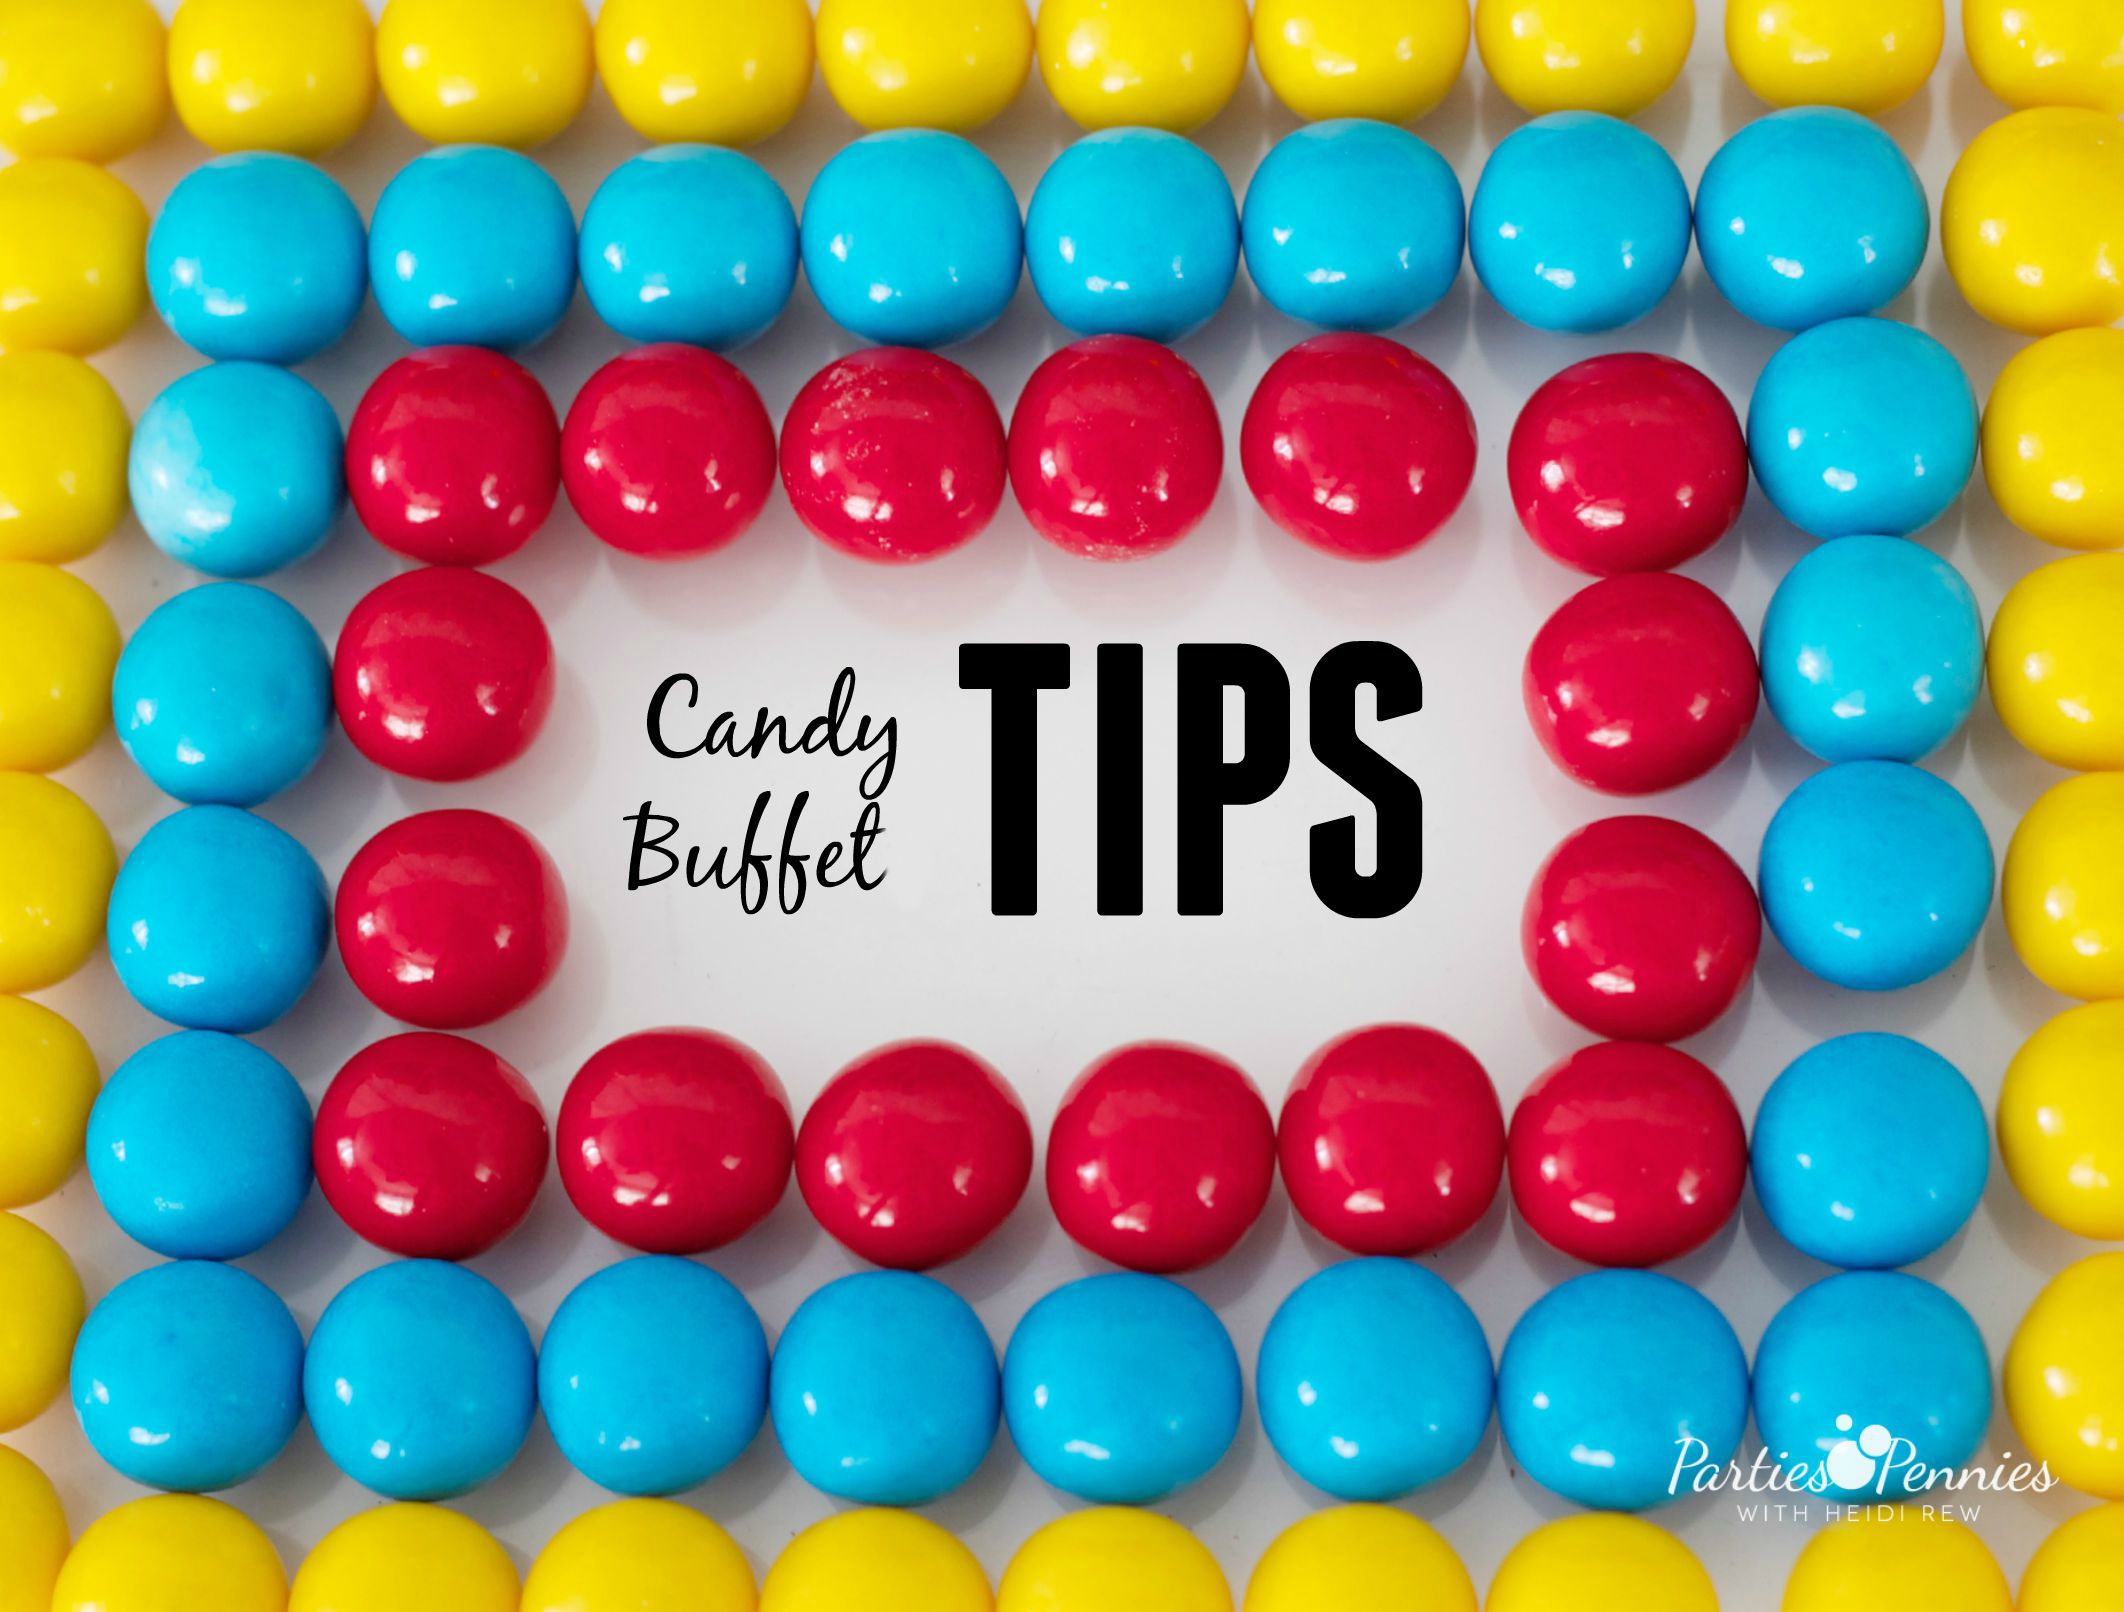 Best Prices for Bulk Candy | PartiesforPennies.com | #candybuffet #wedding #bulkcandy